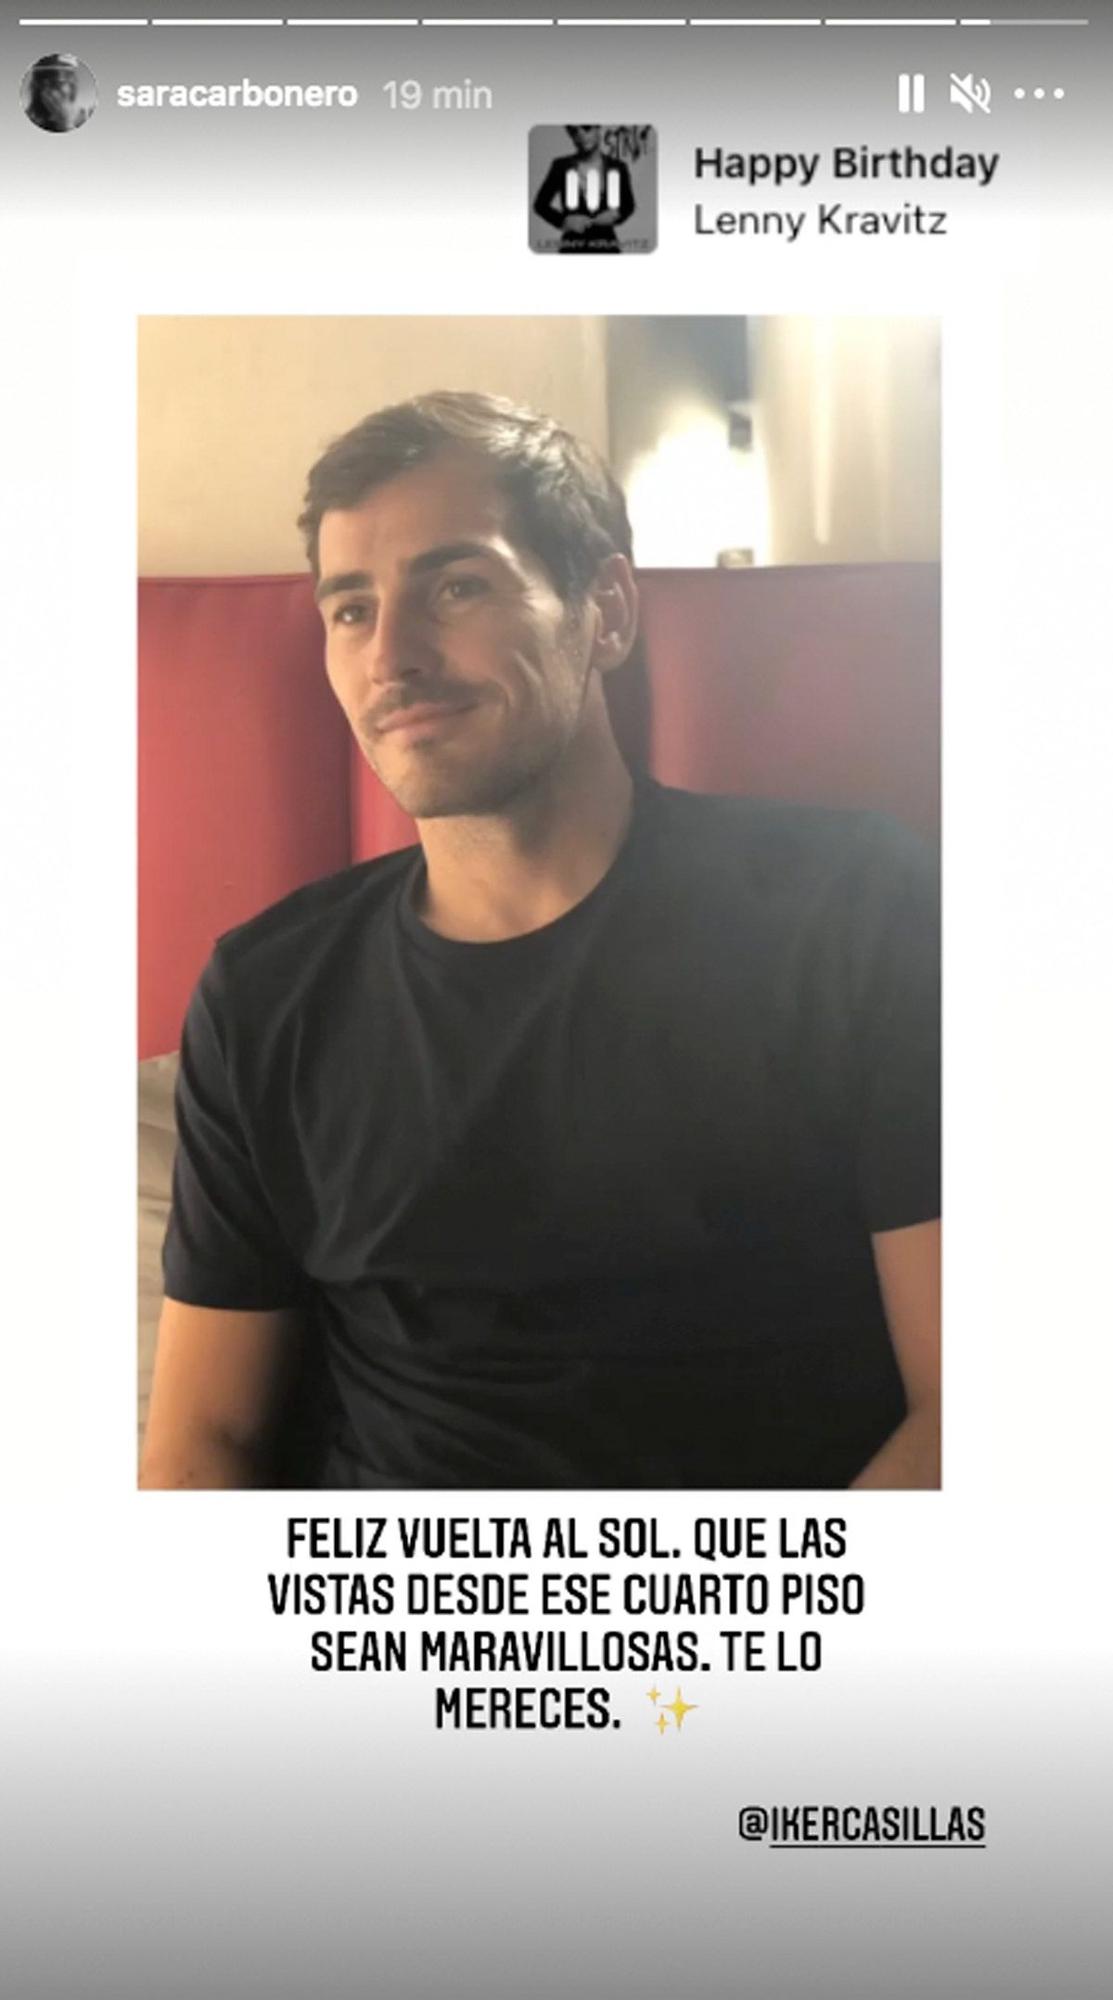 La felicitación de Sara Carbonero a Iker Casillas por 40 cumpleaños